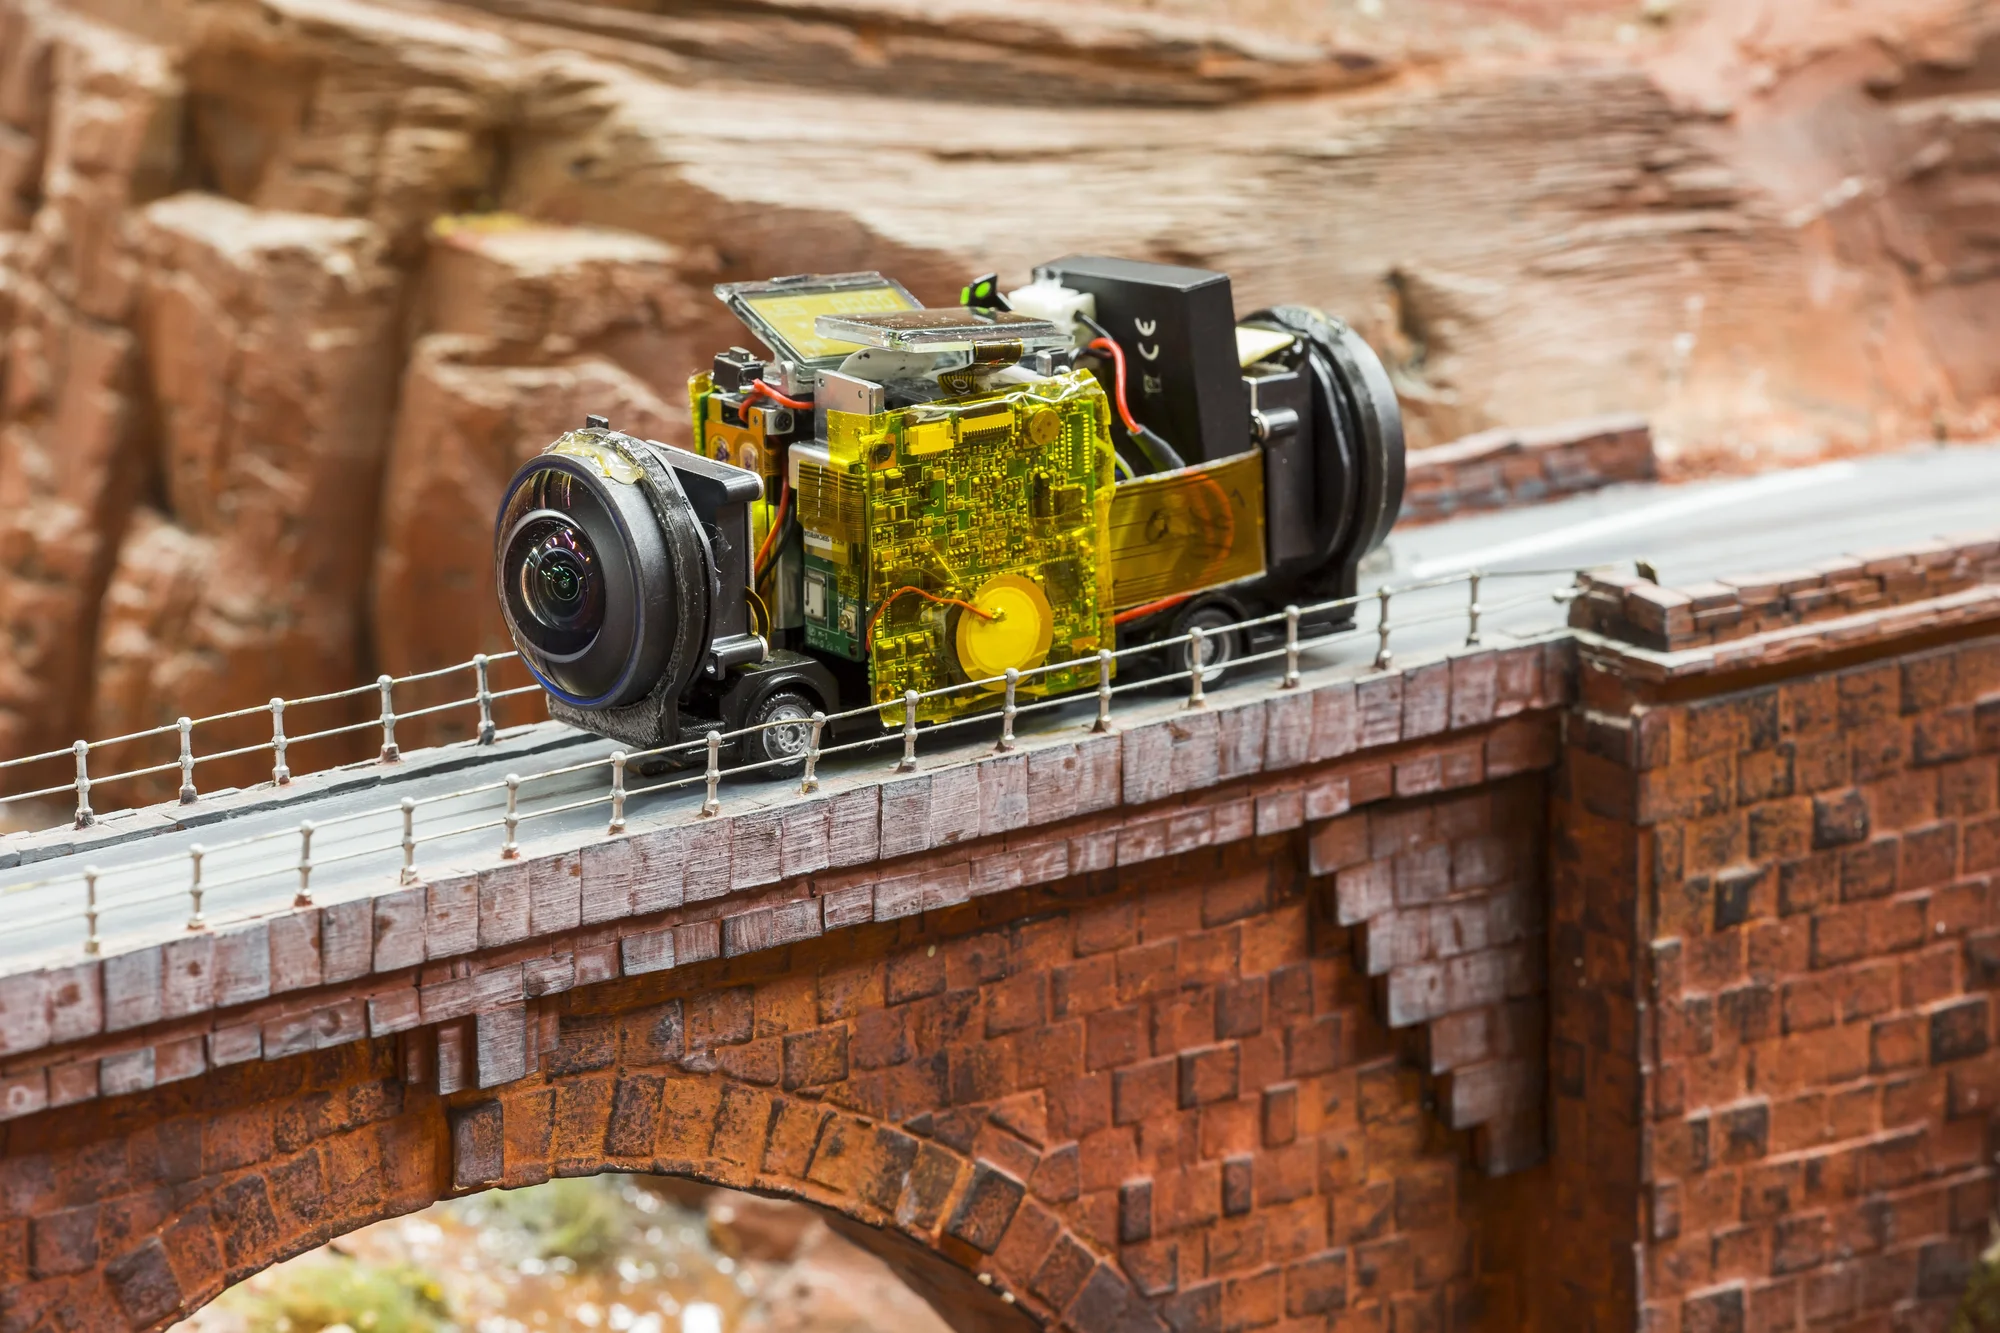 Foto eines Modell-Busses auf dem winzige Kameras montiert wurden, der auf Straßen des Miniatur Wunderlands unterwegs ist.